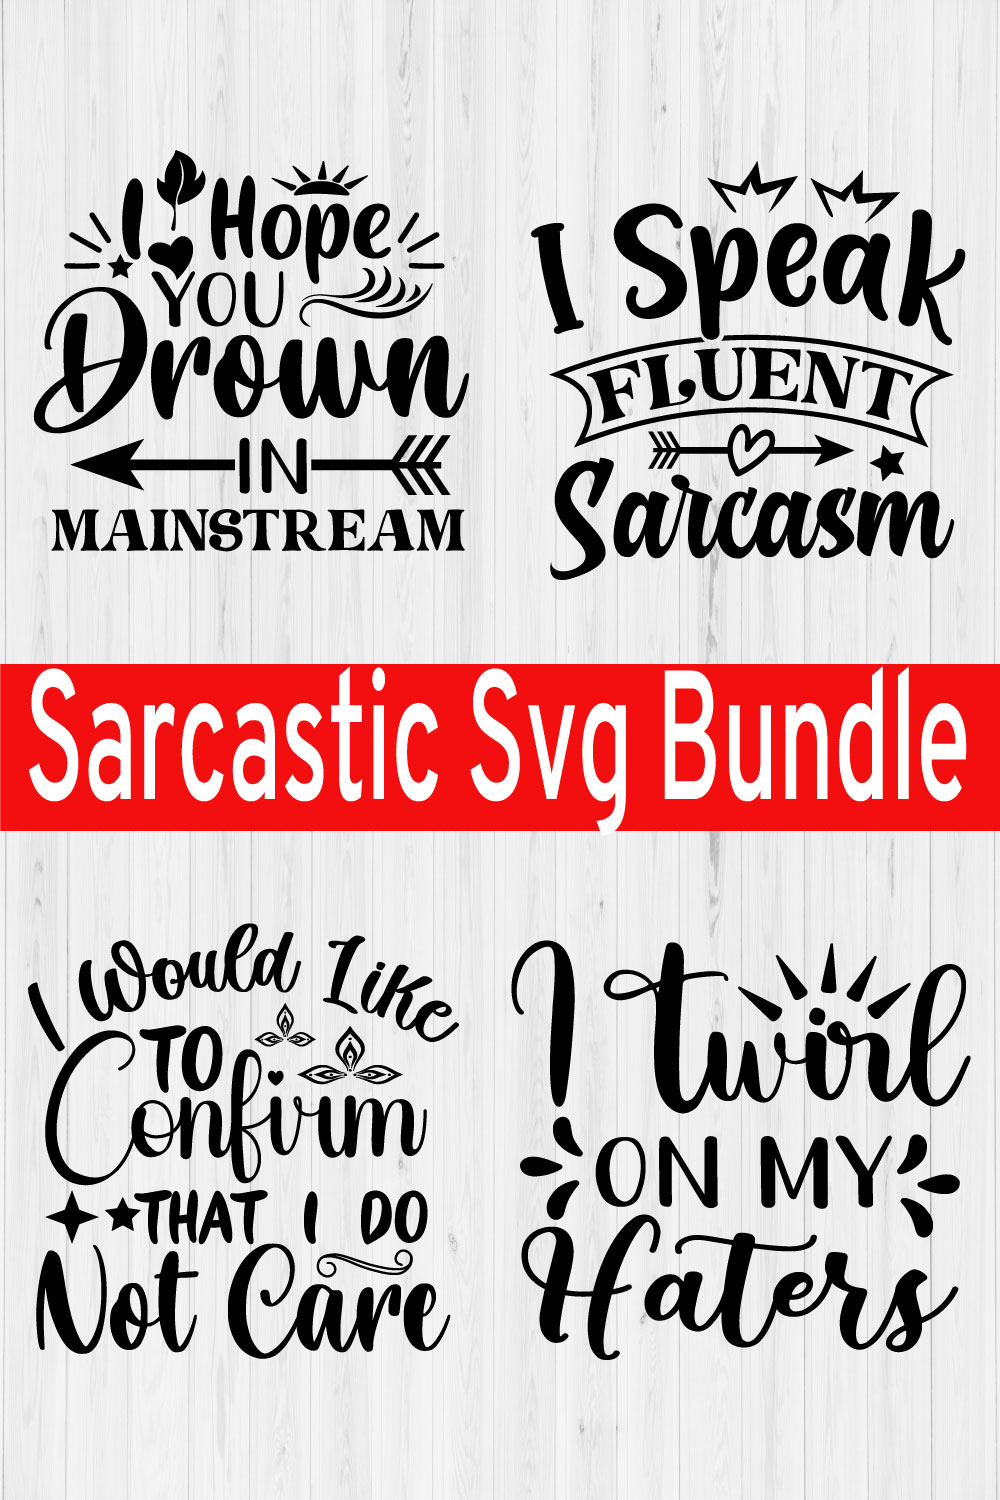 Sarcastic Svg Design Bundle Vol7 pinterest preview image.